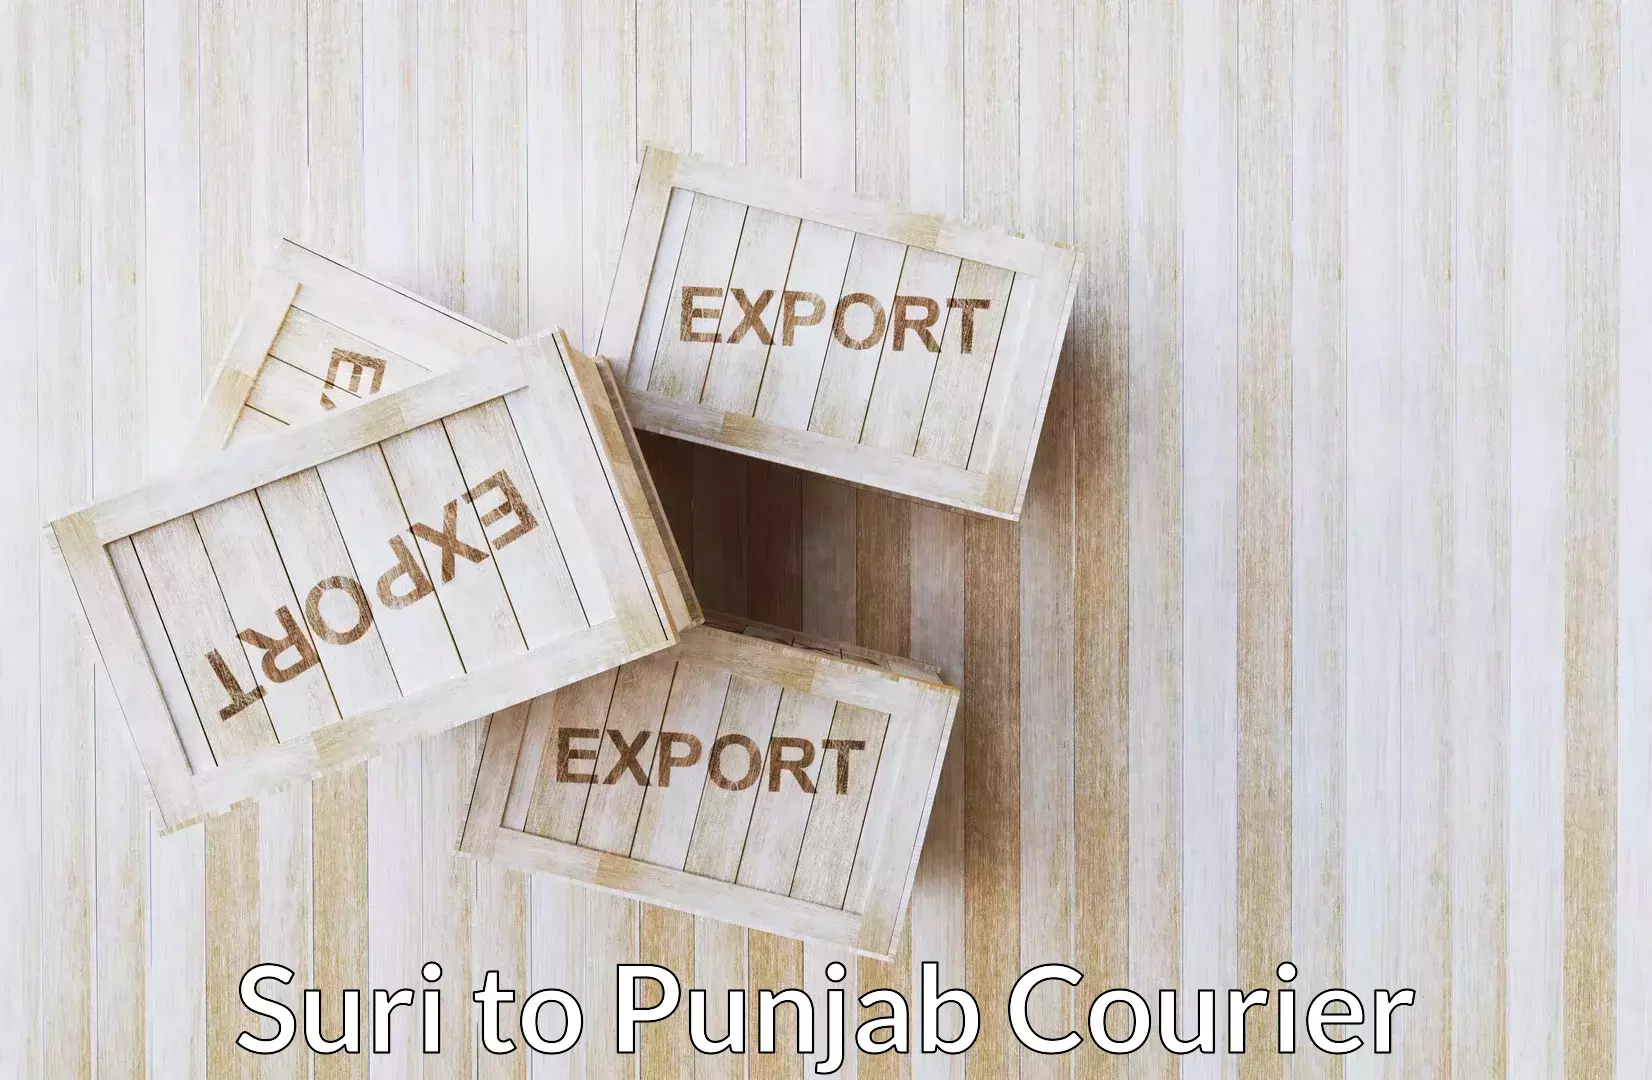 Excess baggage transport Suri to Punjab